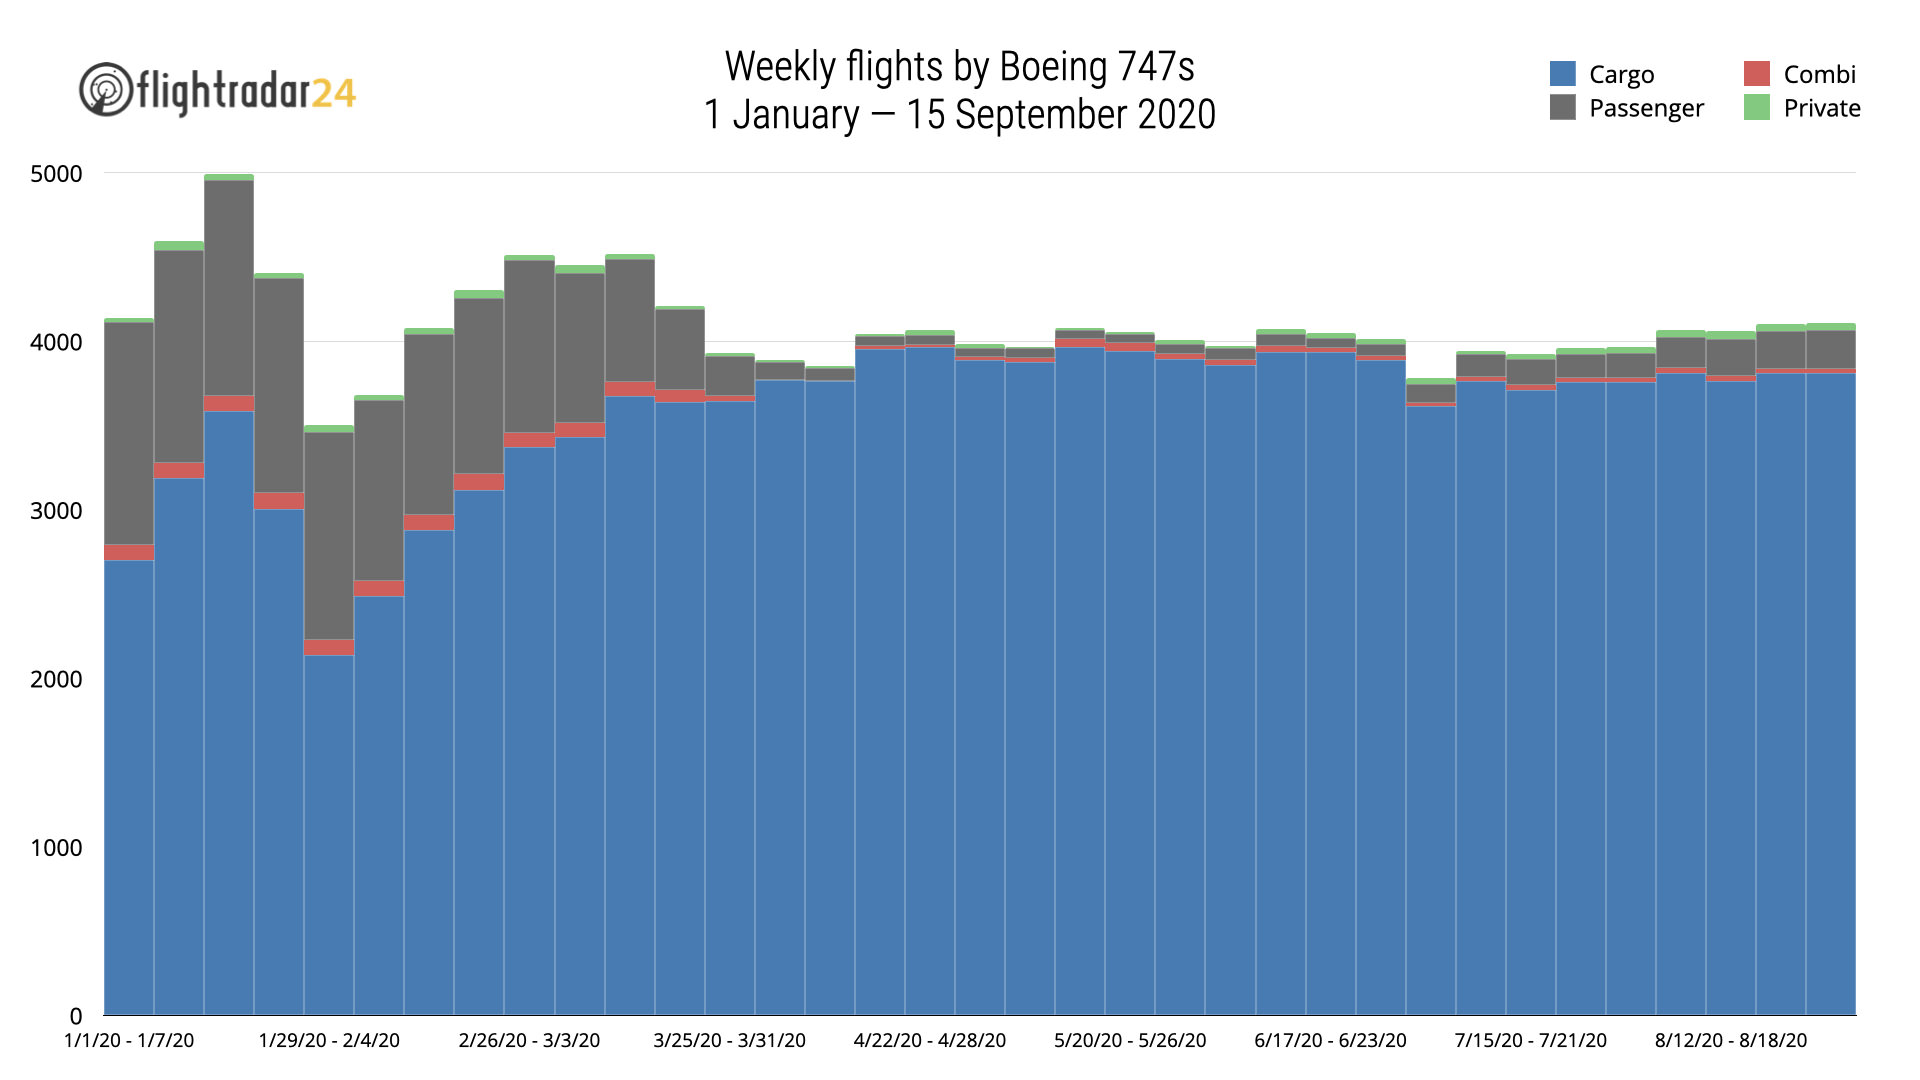 Weekly Flights by Boeing 747s